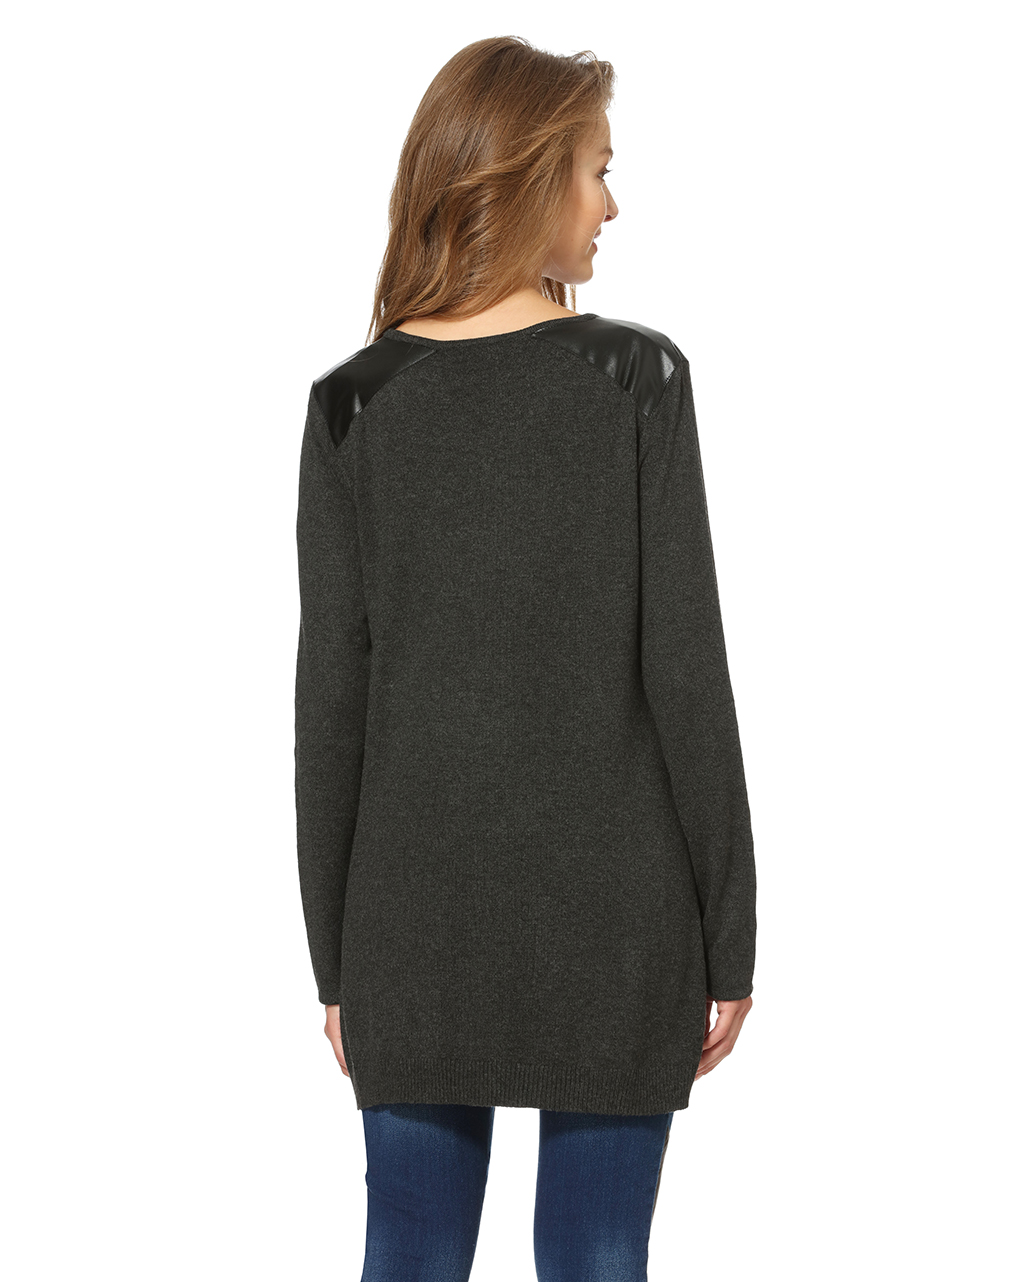 γυναικεία maxi πλεκτή μπλούζα με τσέπες μαύρη - Prénatal